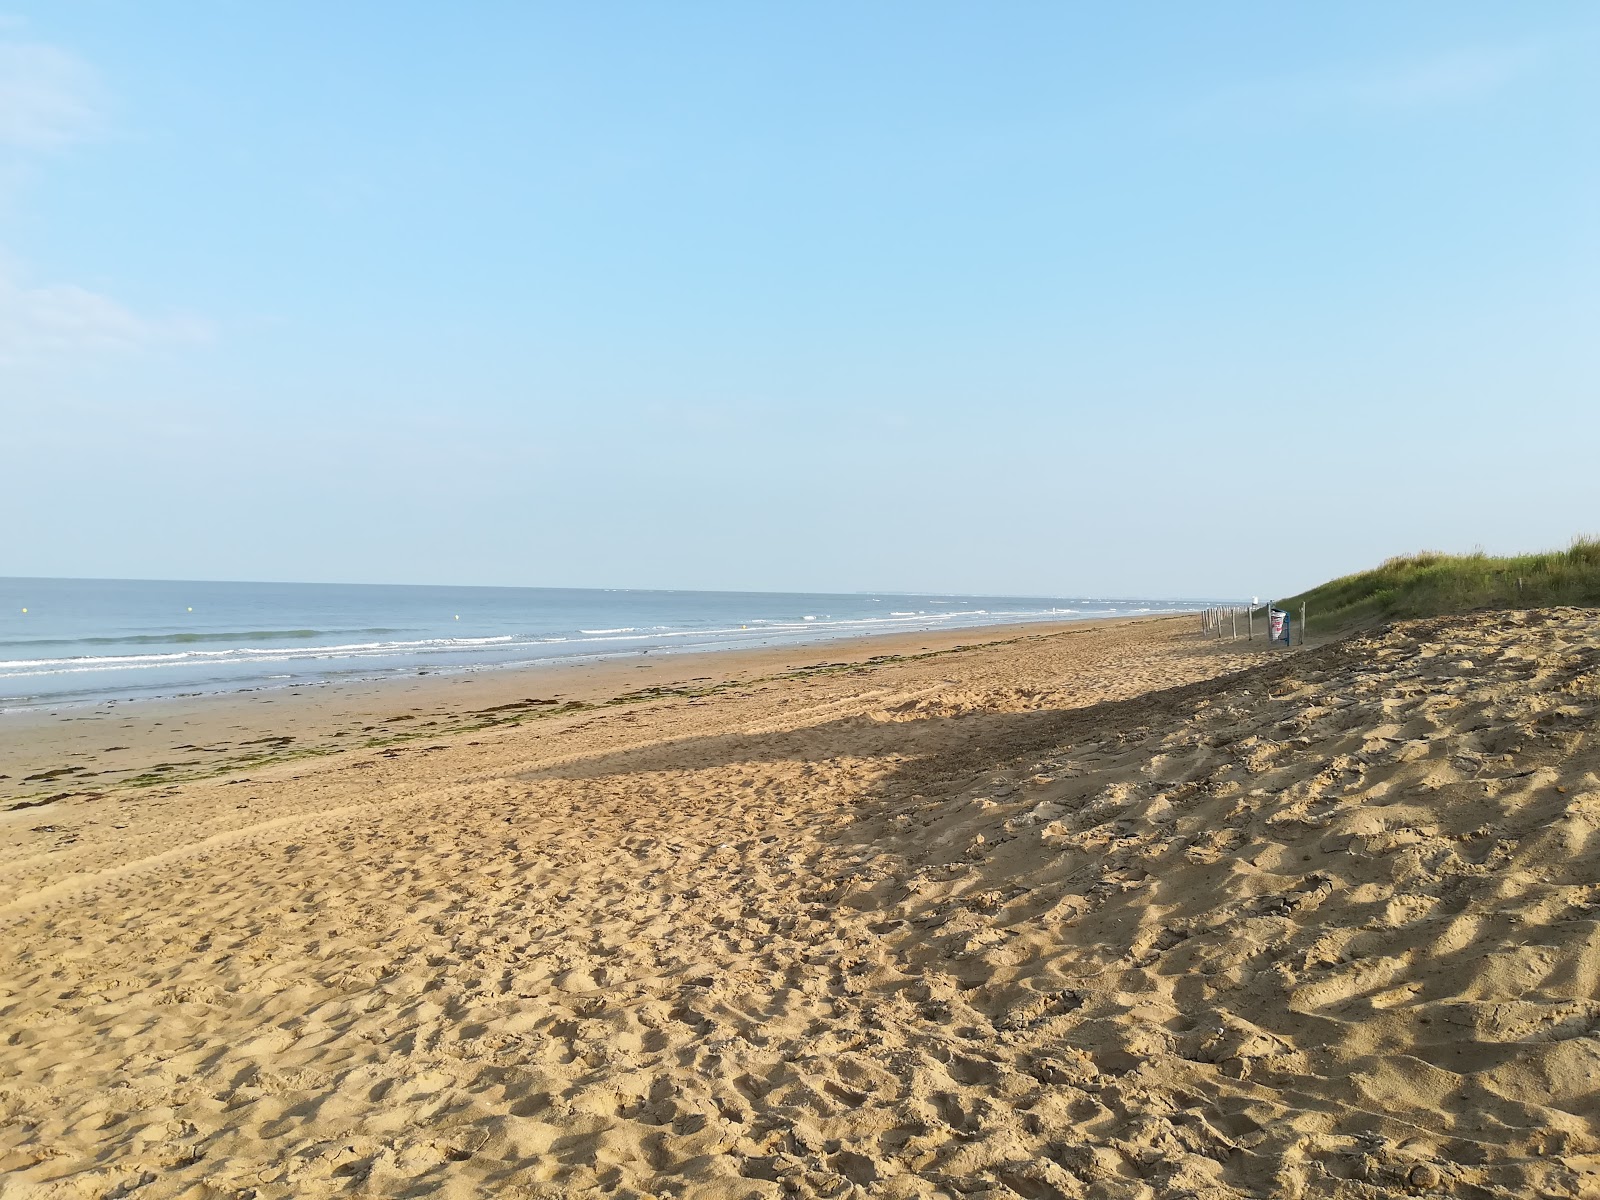 Zdjęcie Bergere beach z powierzchnią jasny piasek